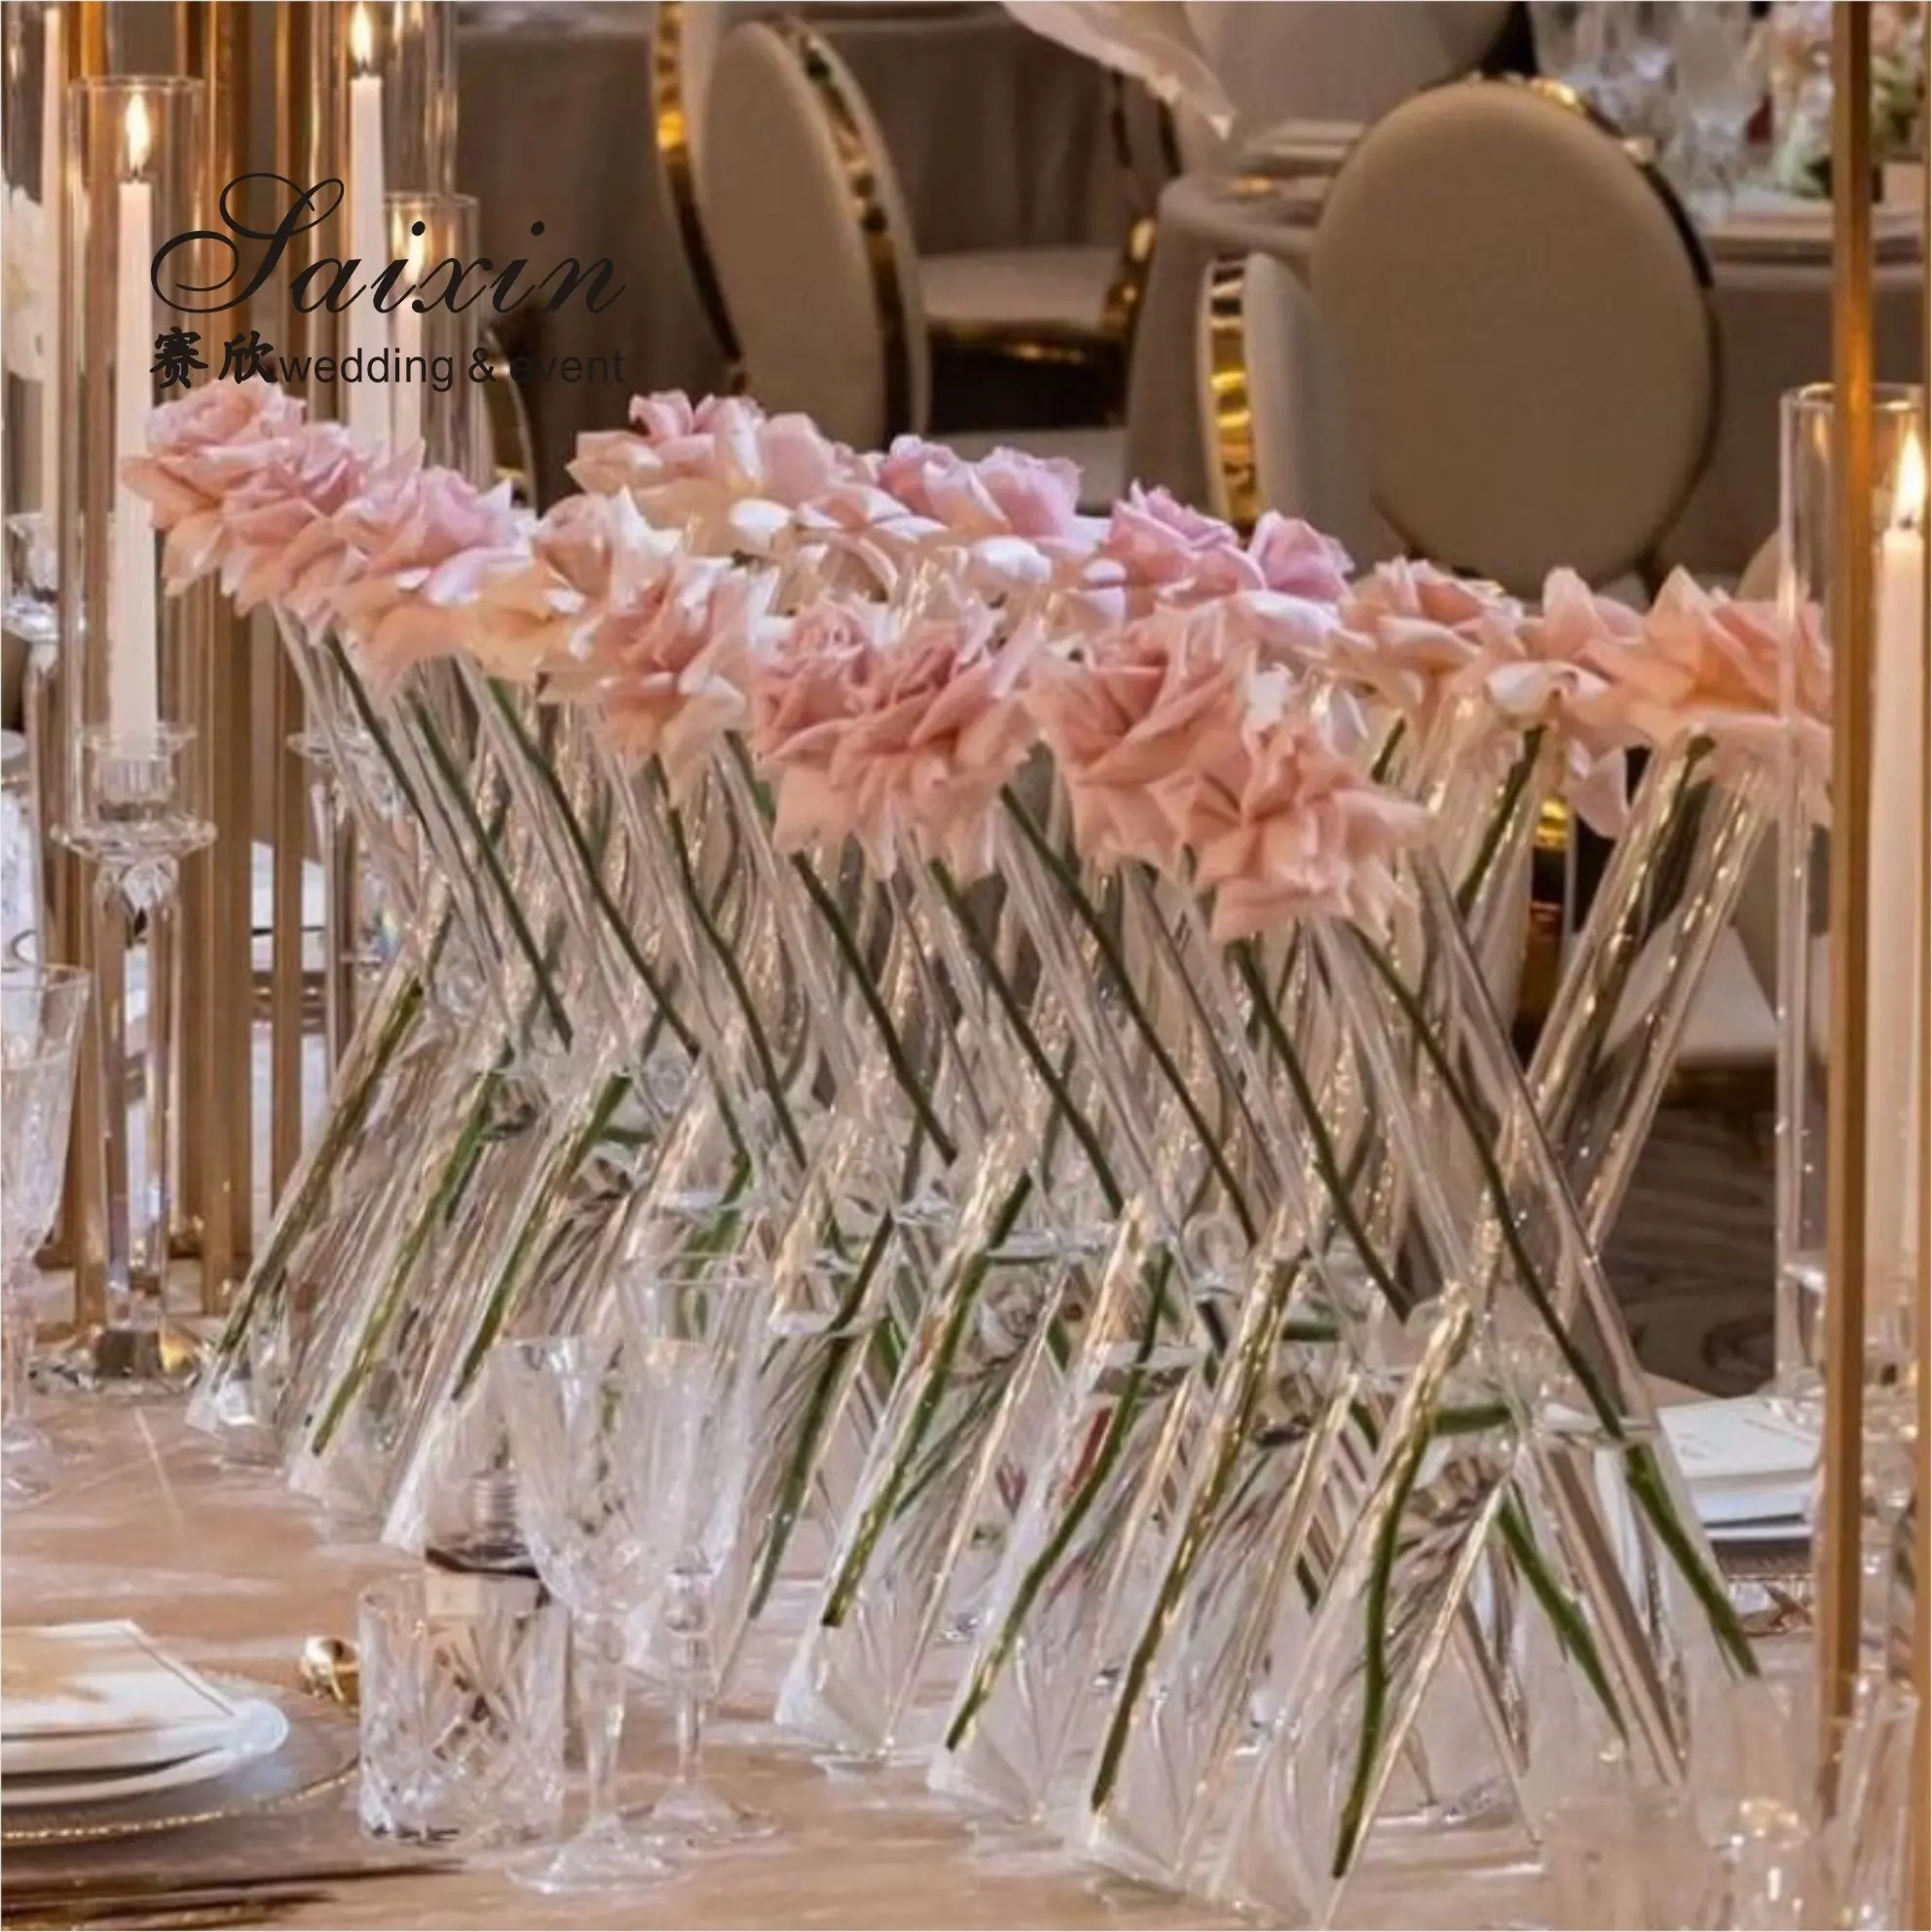 Conjunto de peças para mesas de casamento, conjunto de 3 vasos de vidro com cilindro de vidro para rosas